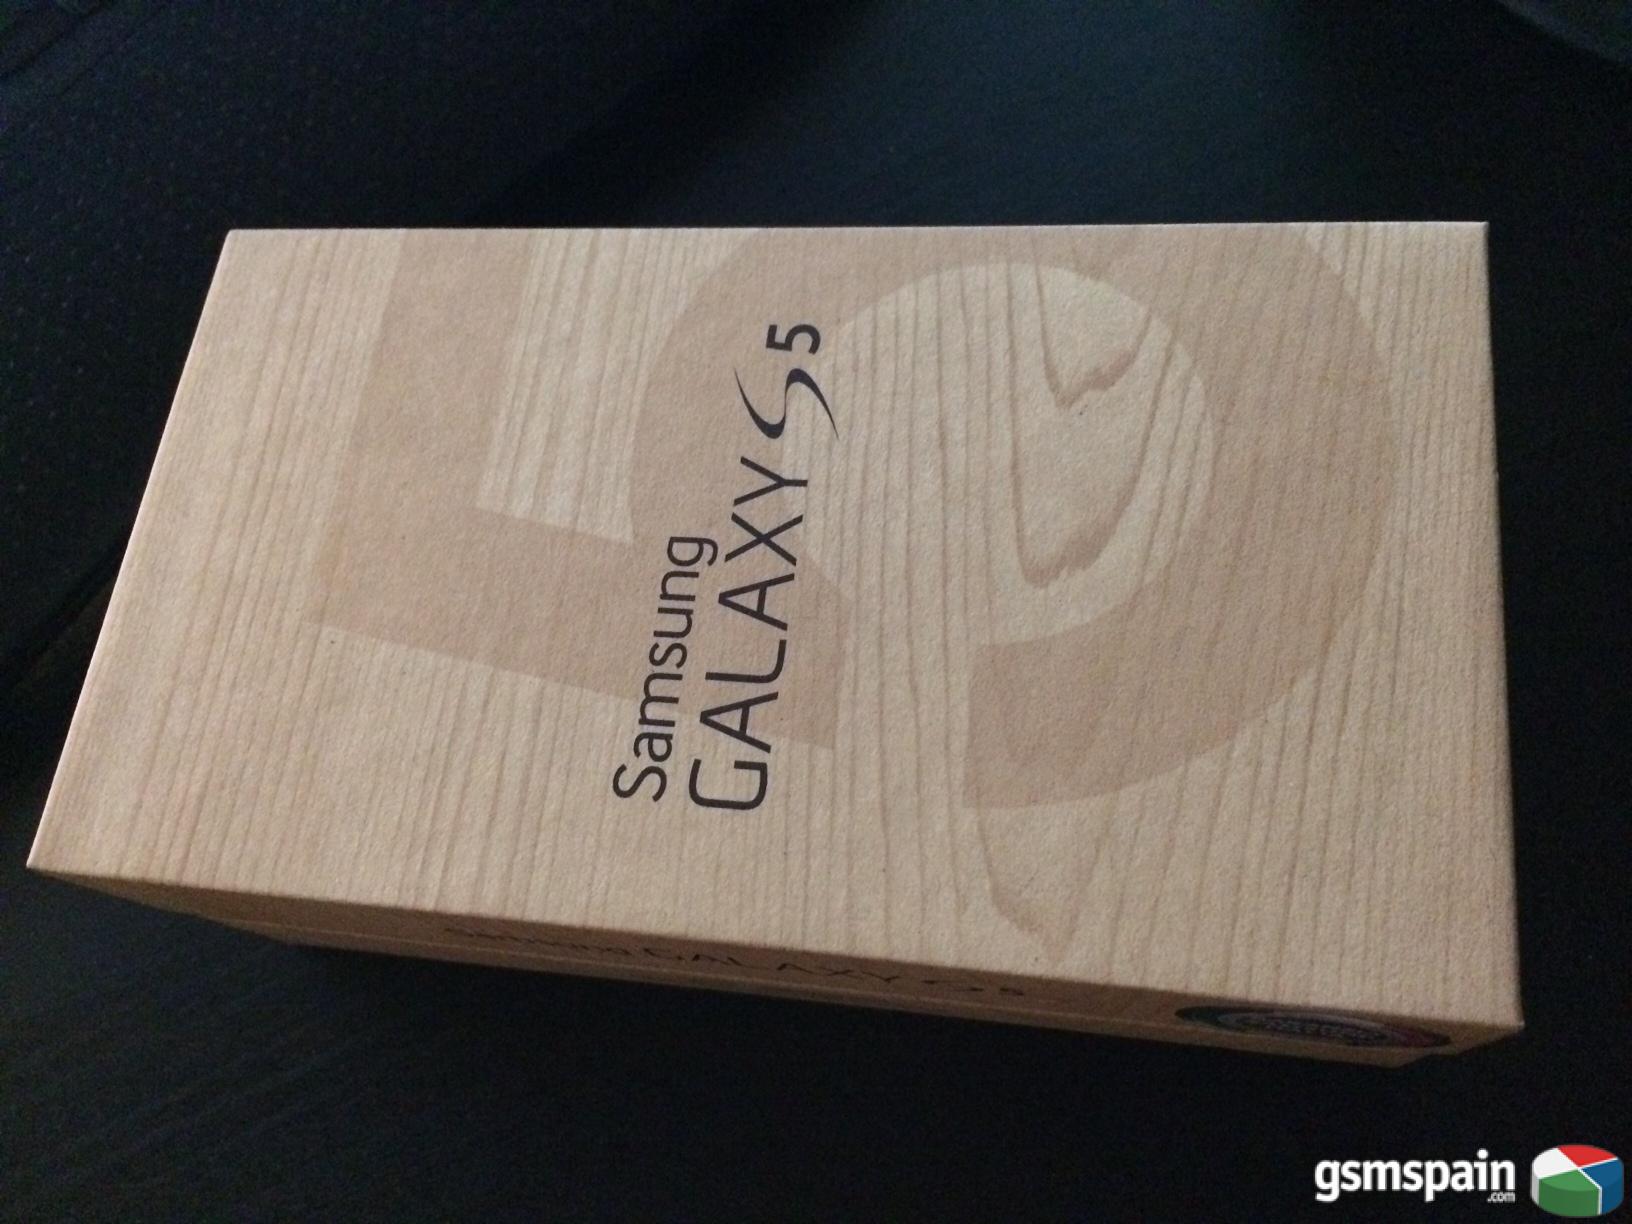 [VENDO] Samsung Galaxy S5, 16GB, libre y PRECINTADO 